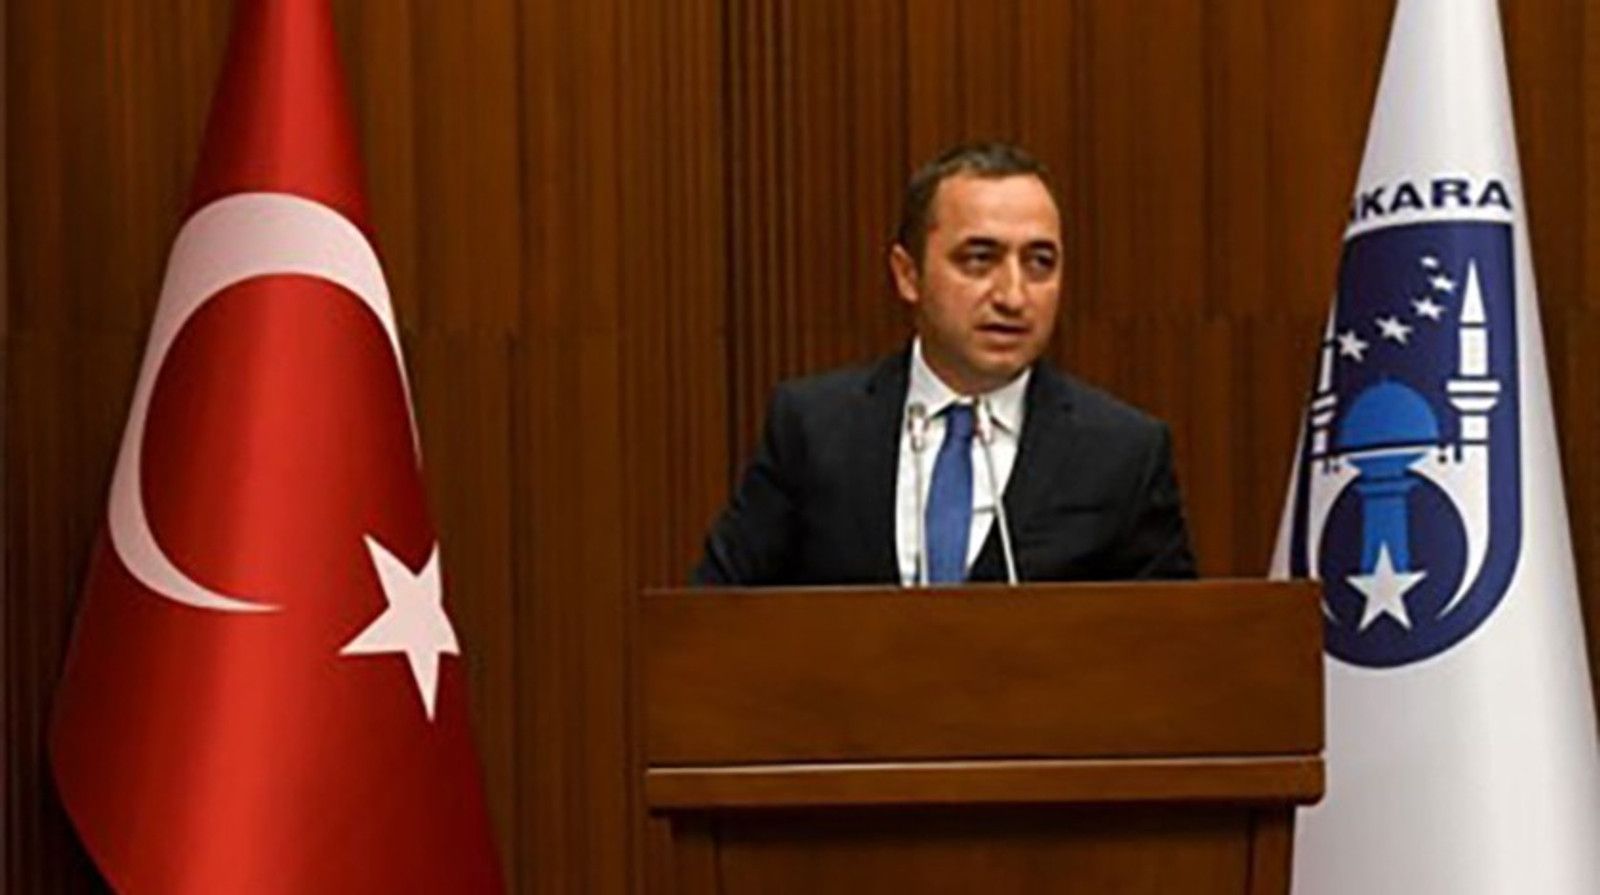 MHP'li Ilıkan: Ankara bunu hak etmiyor